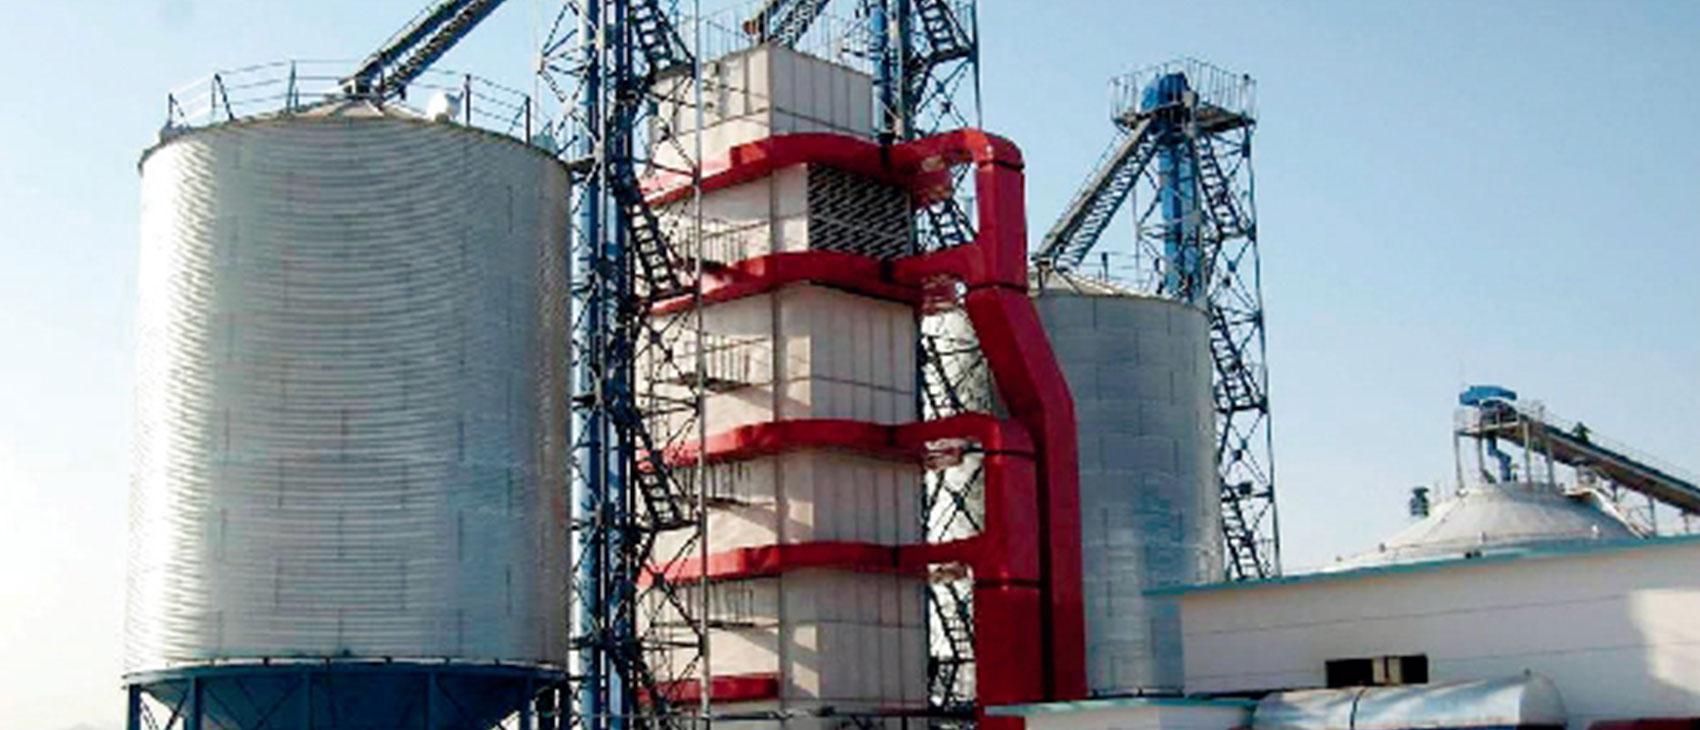 Corn Drying System, COFCO Badaling Huatian Grain Depot